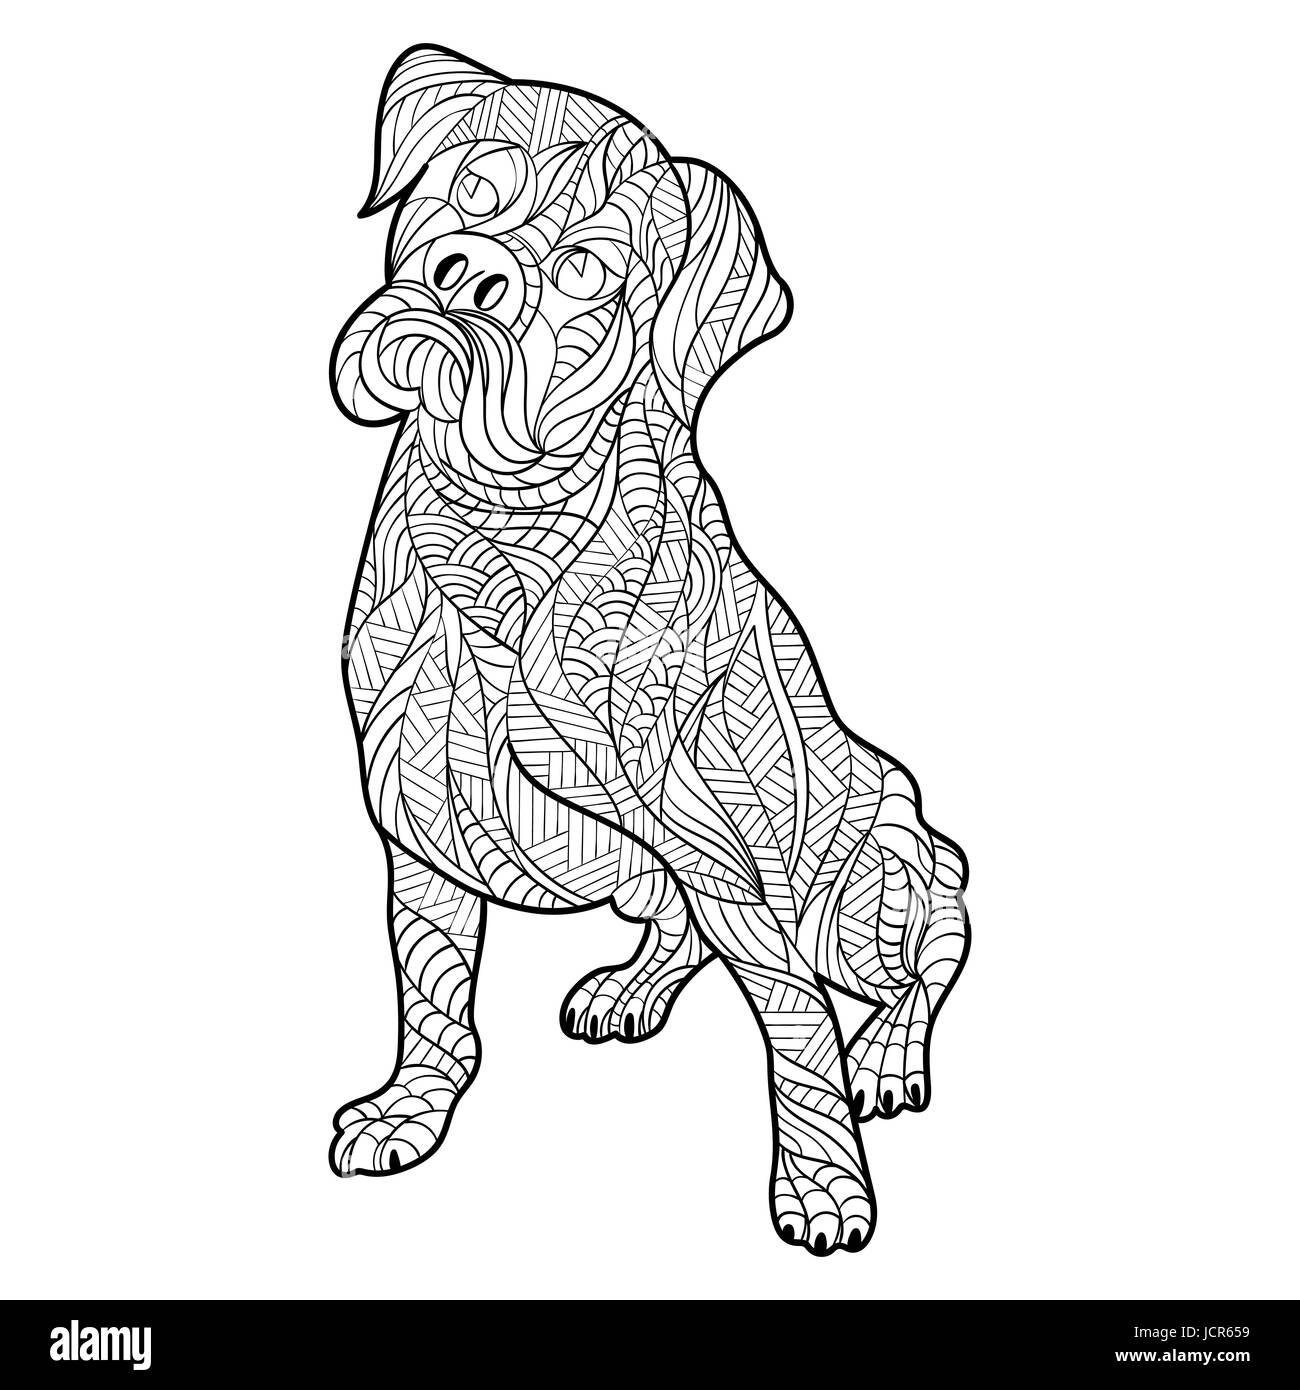 Vektor monochrome handgezeichneten Zentagle Darstellung der Boxer Hund. Malvorlagen mit hohen Details isoliert auf weißem Hintergrund. Stock Vektor